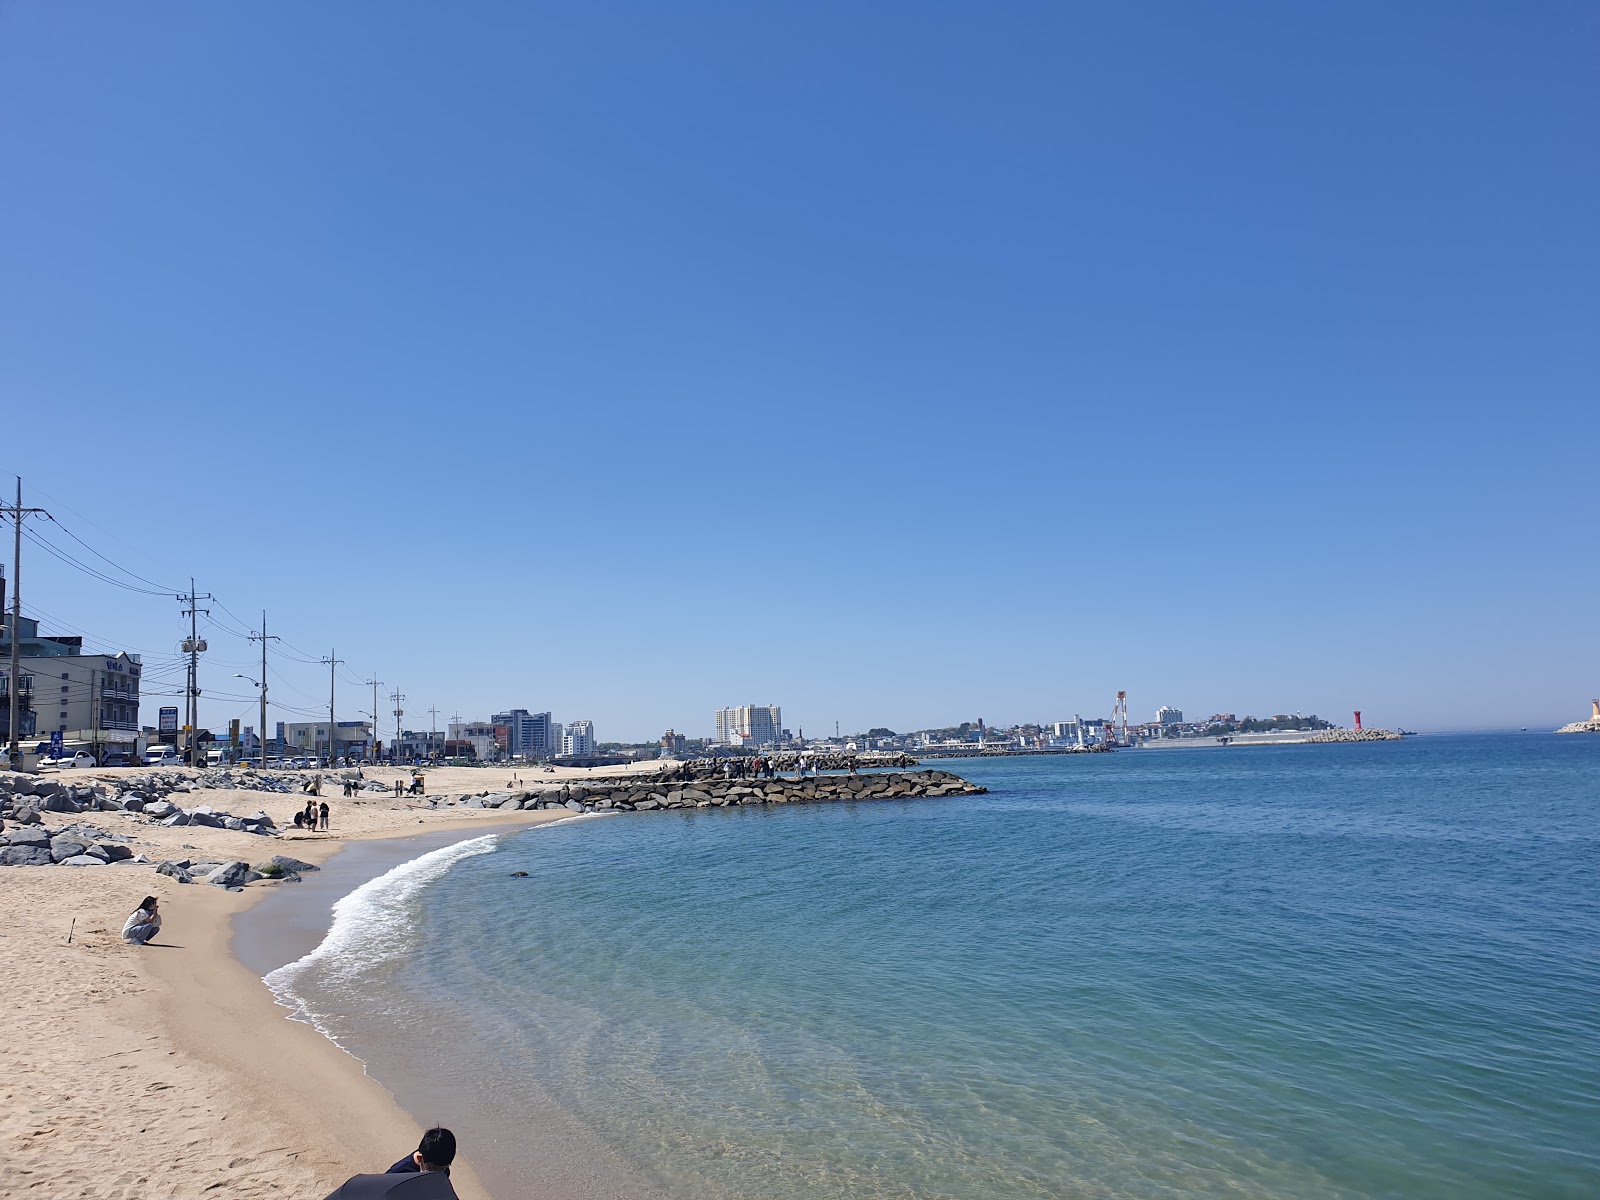 Yeongjin Beach'in fotoğrafı geniş plaj ile birlikte